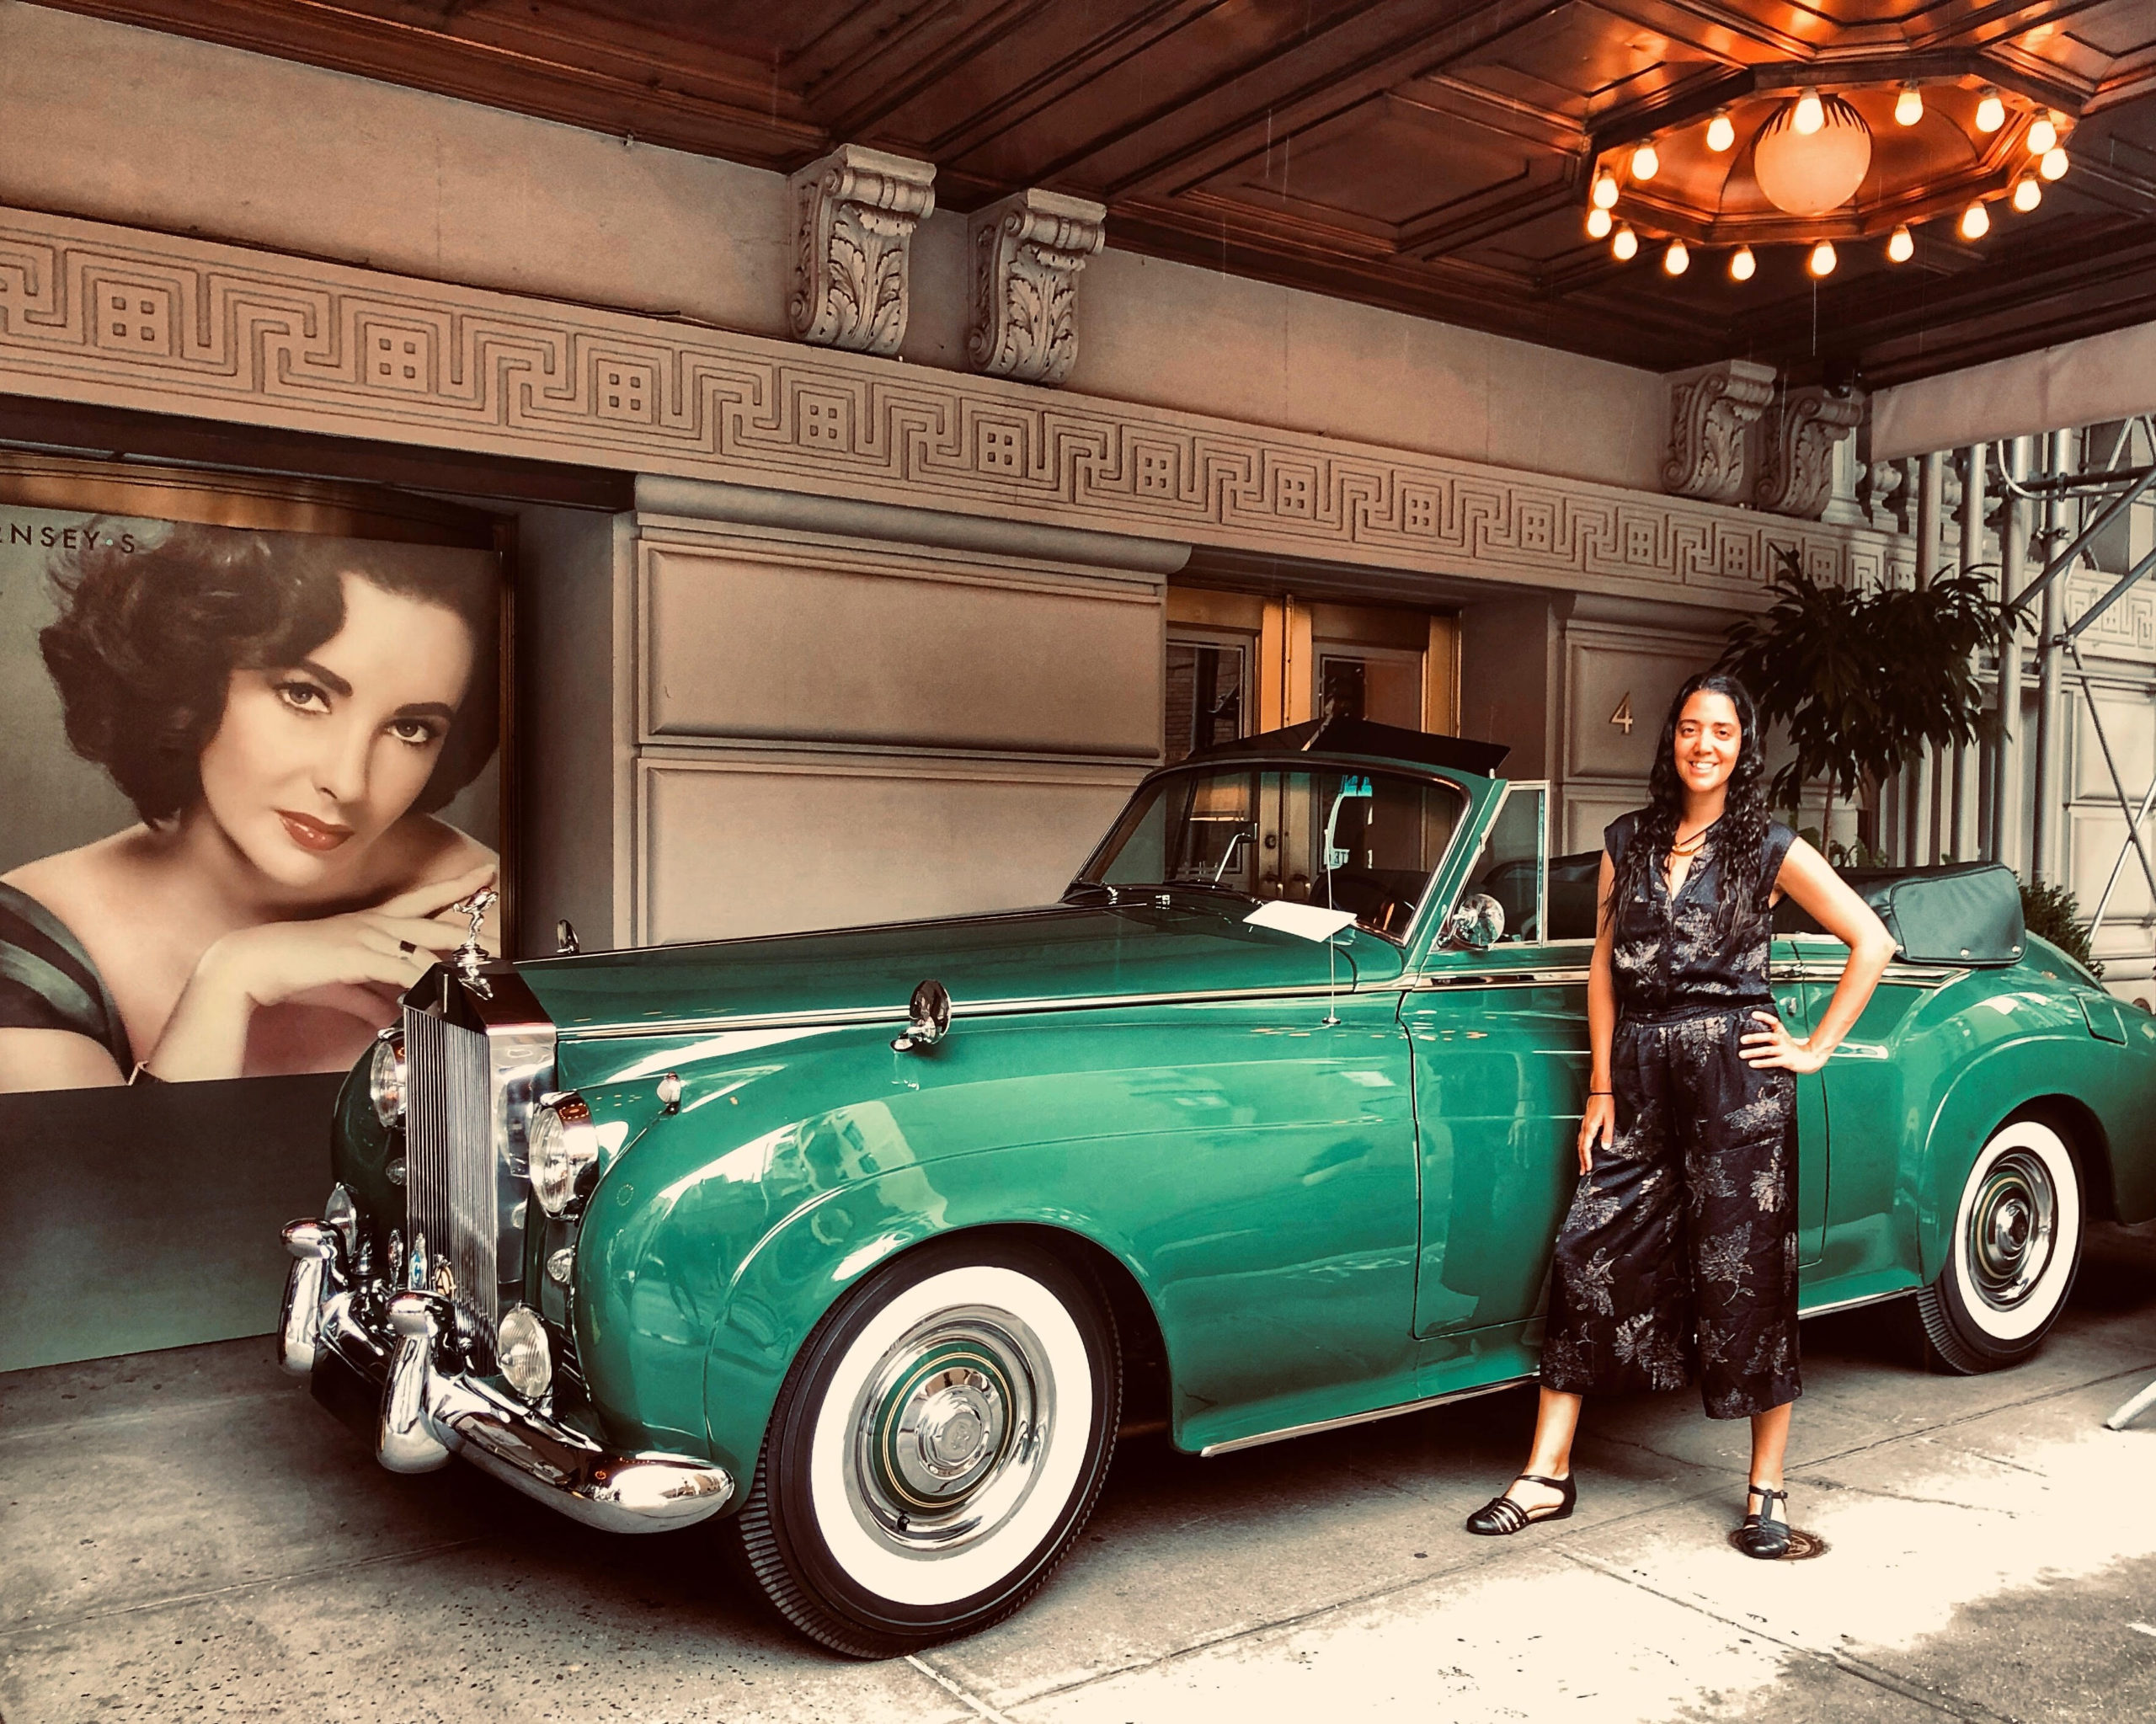 The Green Goddess See Elizabeth Taylors 1960 Rolls Royce Car